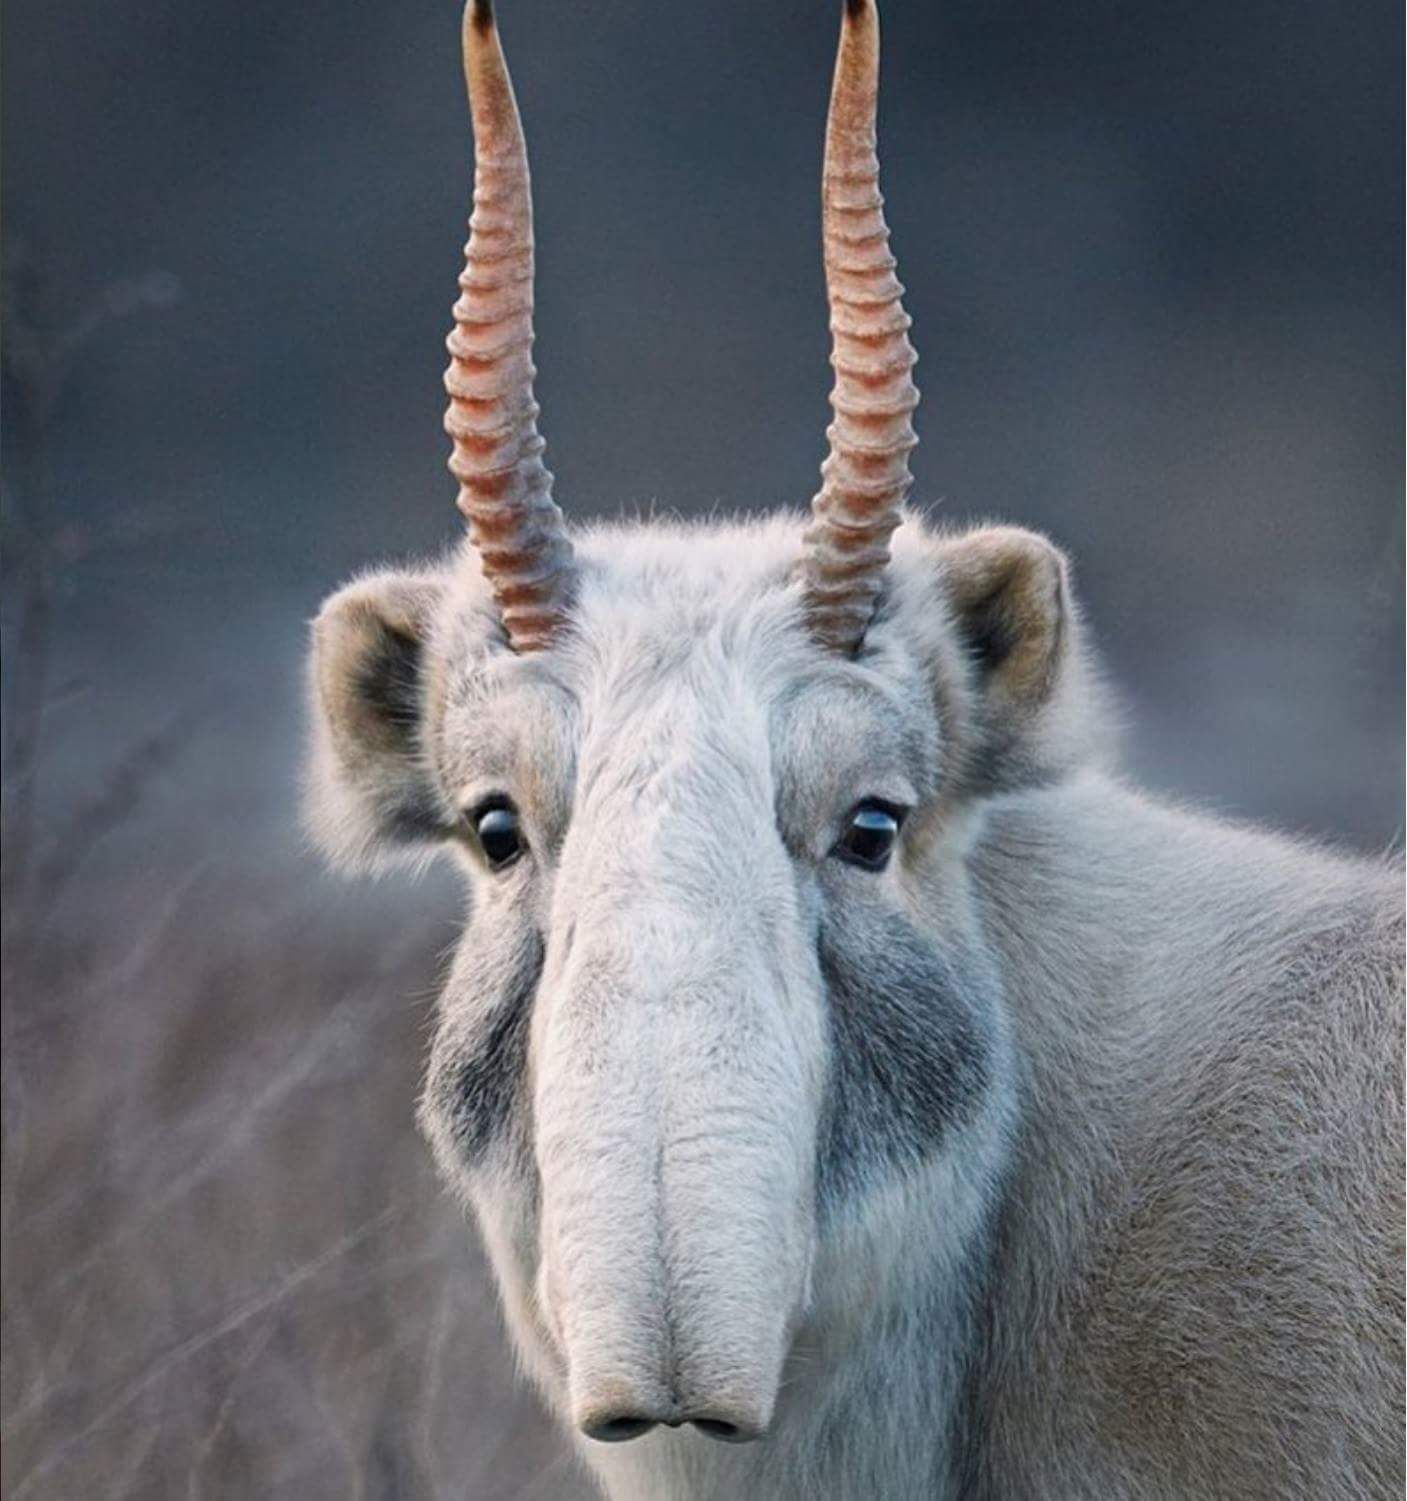 The critically endangered Saiga Antelope